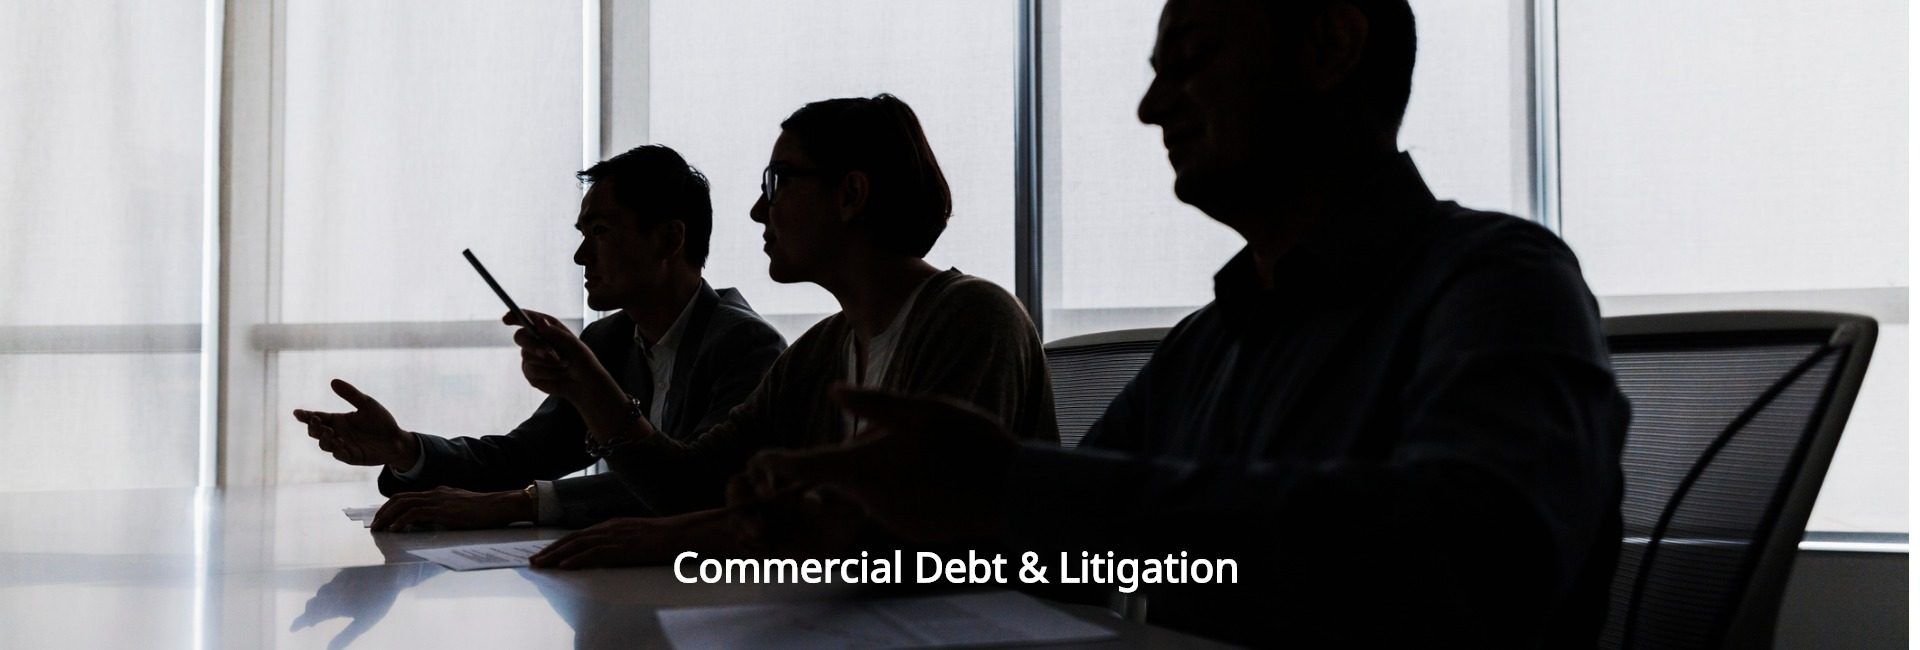 Commercial Debt & Litigation London Process Servers